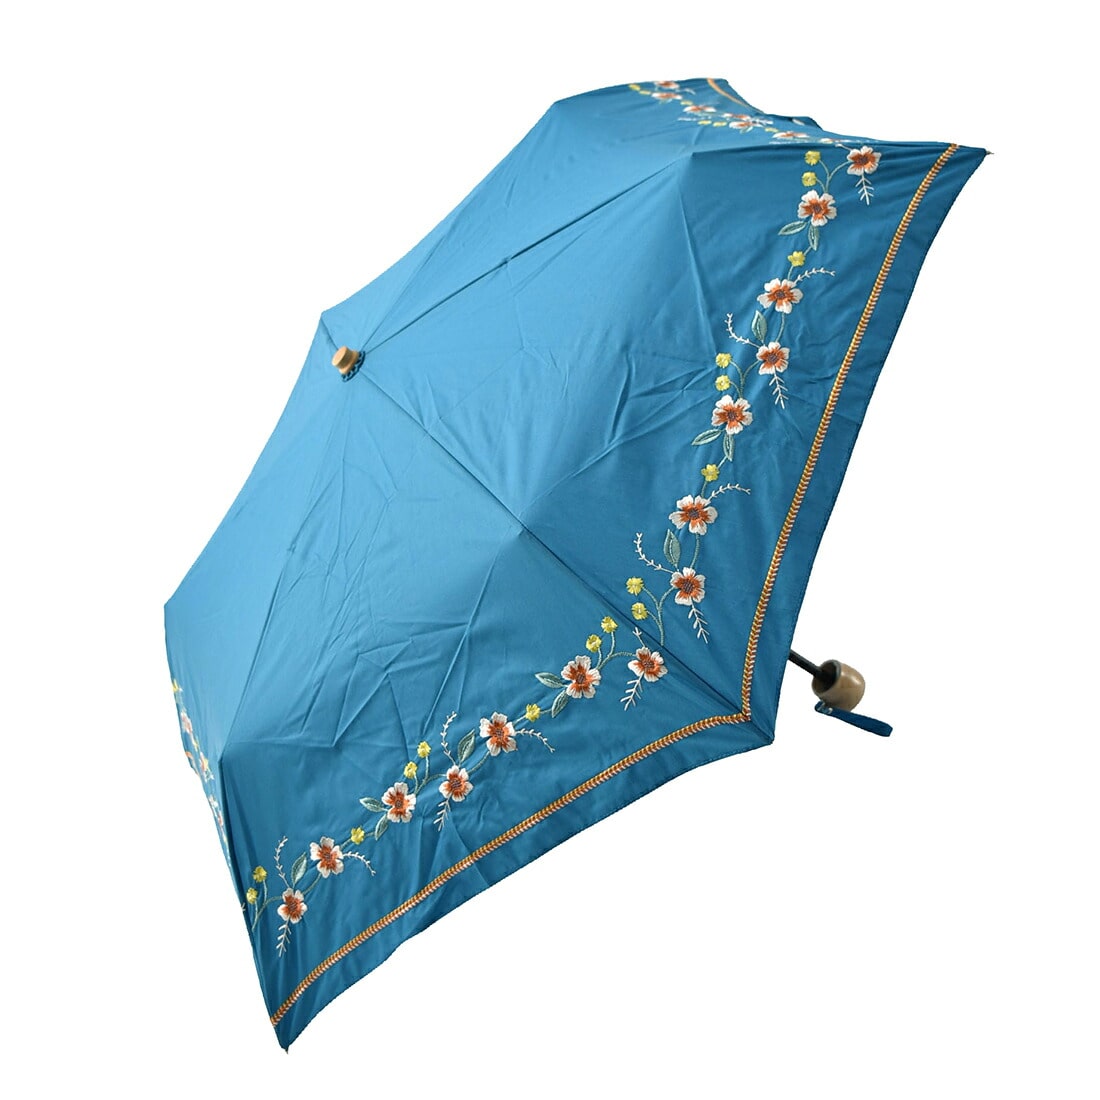 晴雨兼用 日傘 雨傘 折りたたみ傘 because ボーホーフラワー刺繍 ミニ